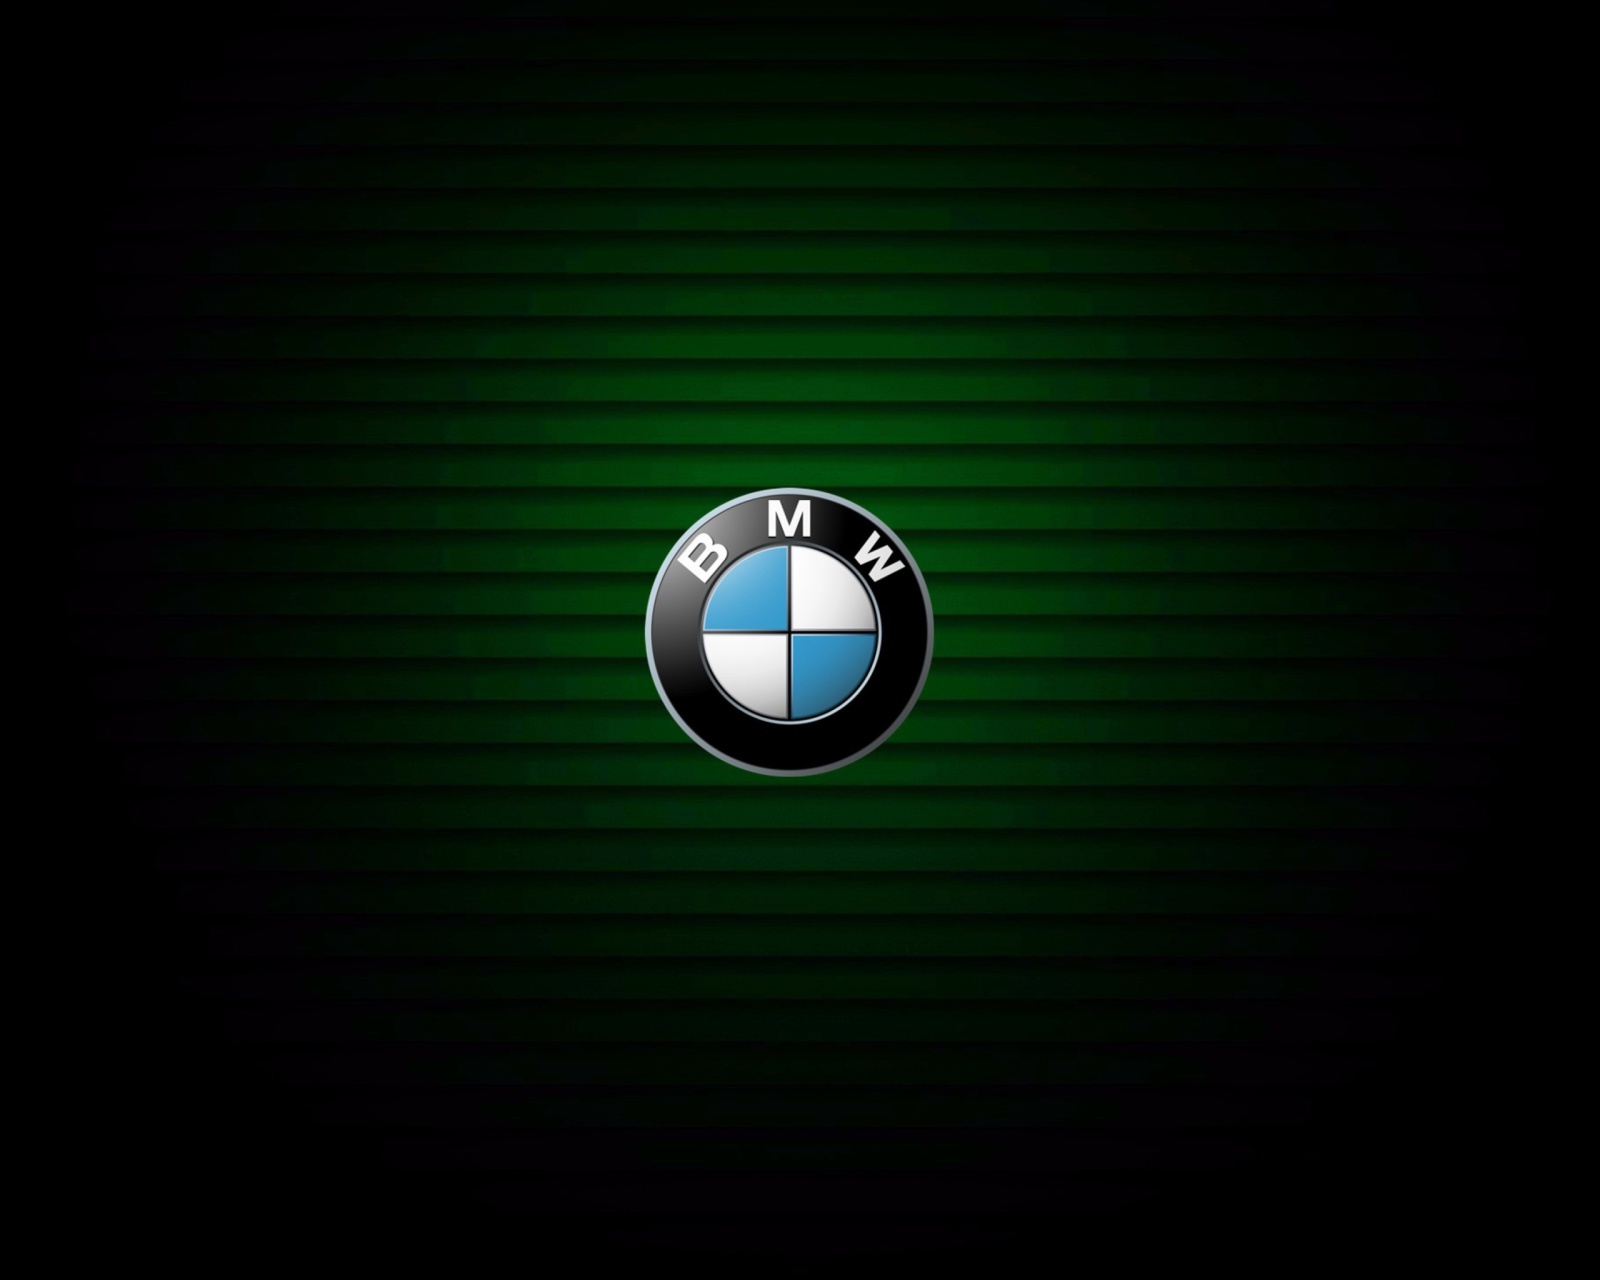 BMW Emblem wallpaper 1600x1280